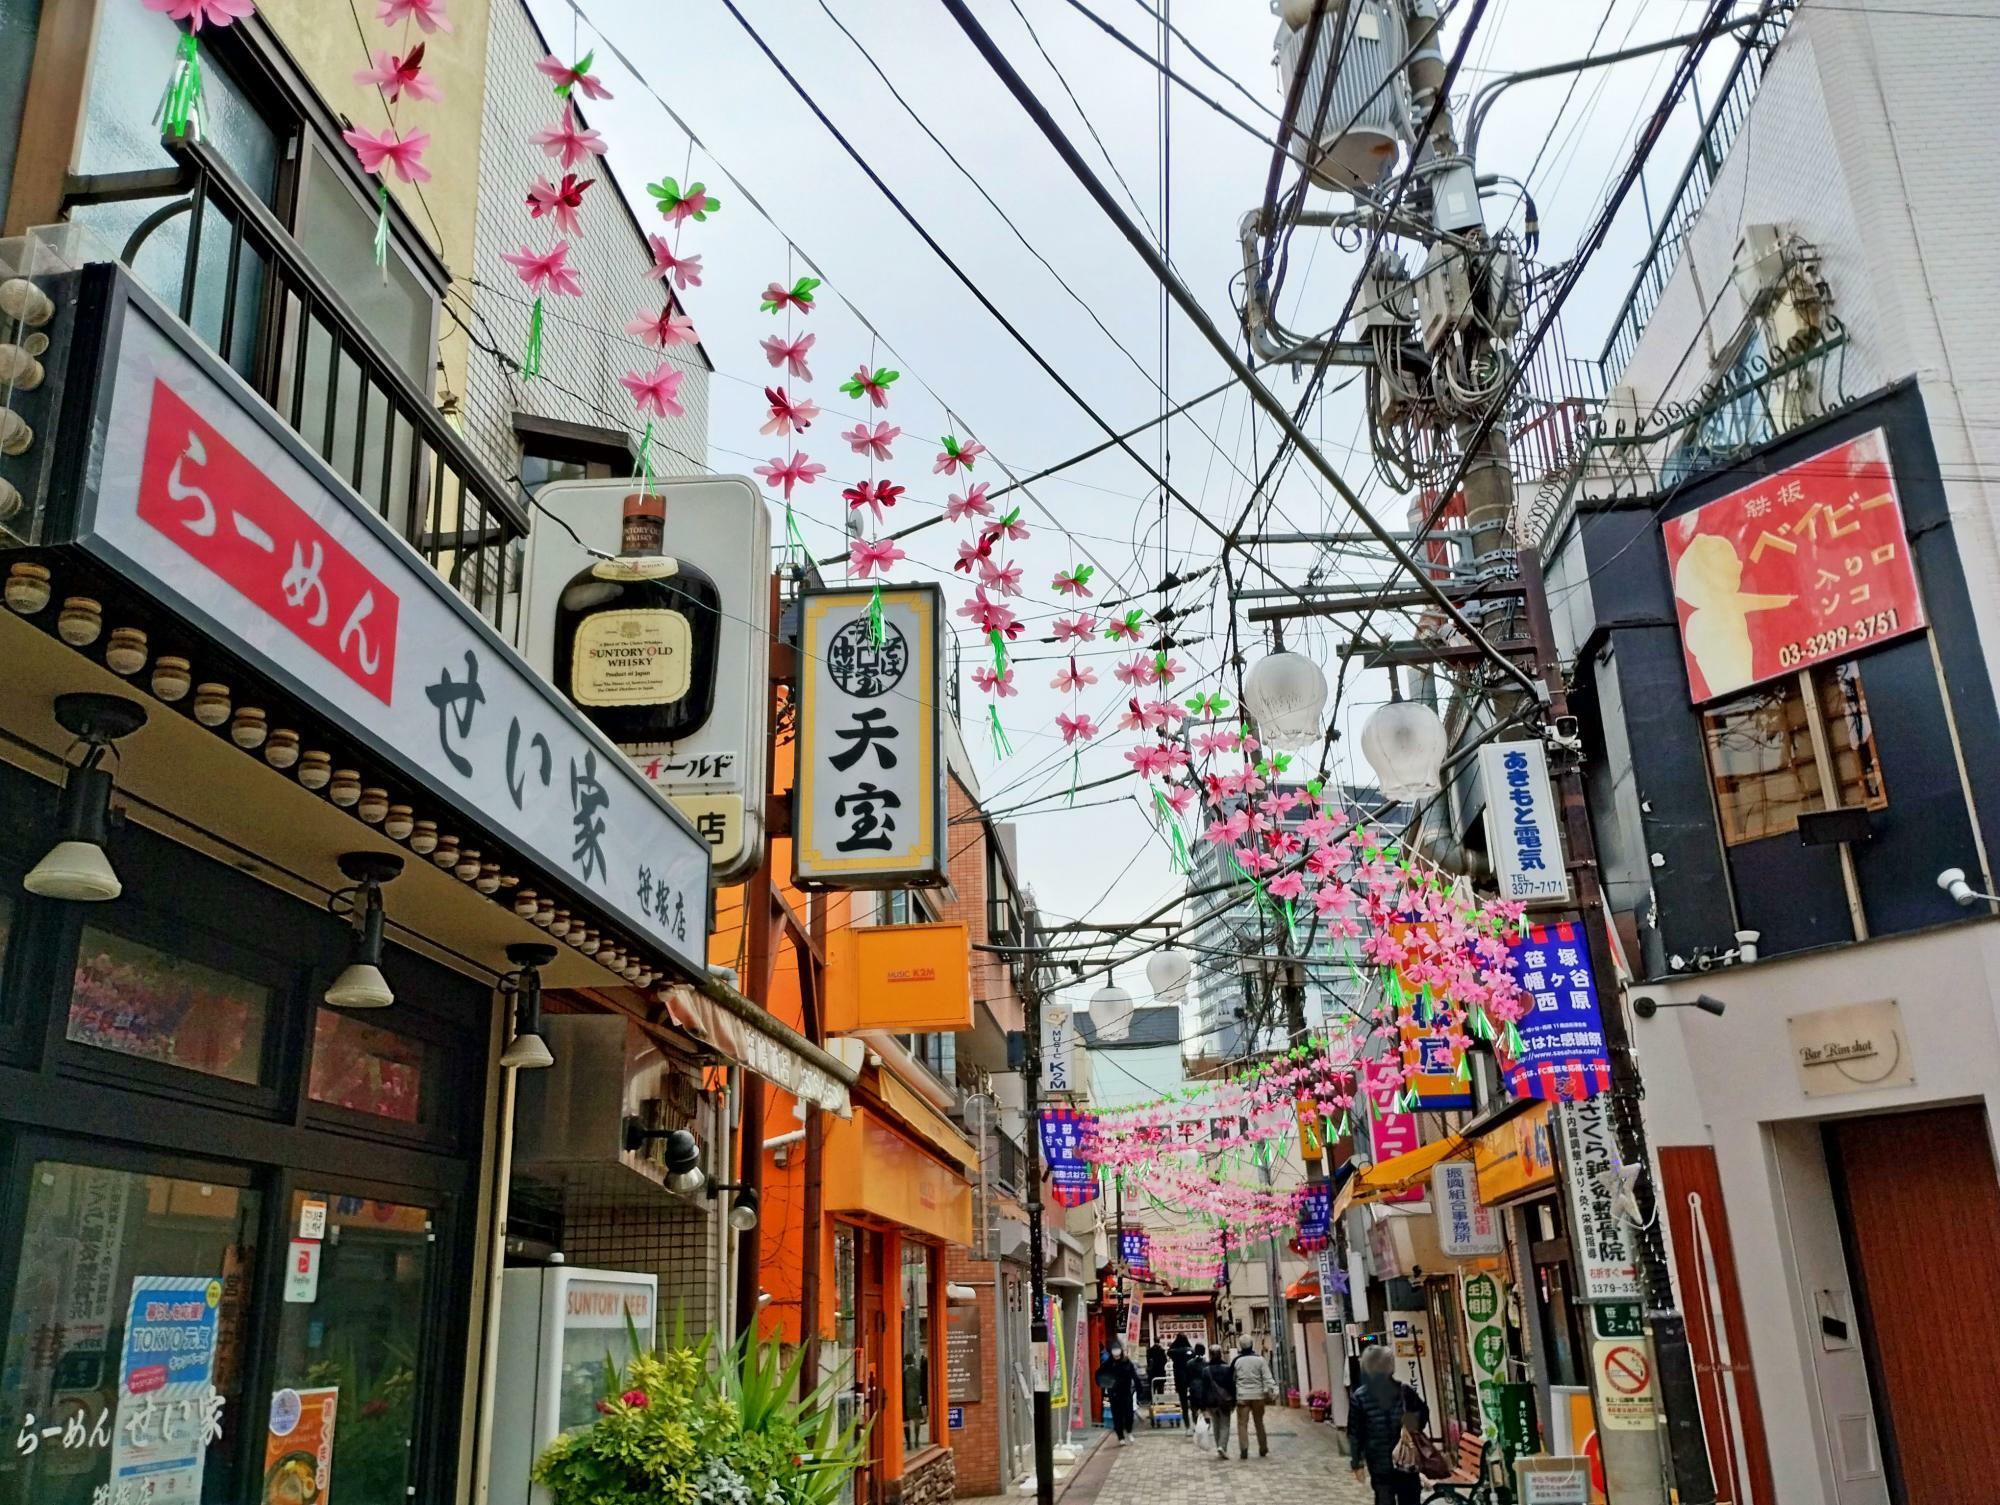 渋谷に残る昭和な商店街を歩くとダルマウイスキーの看板を見ることができます